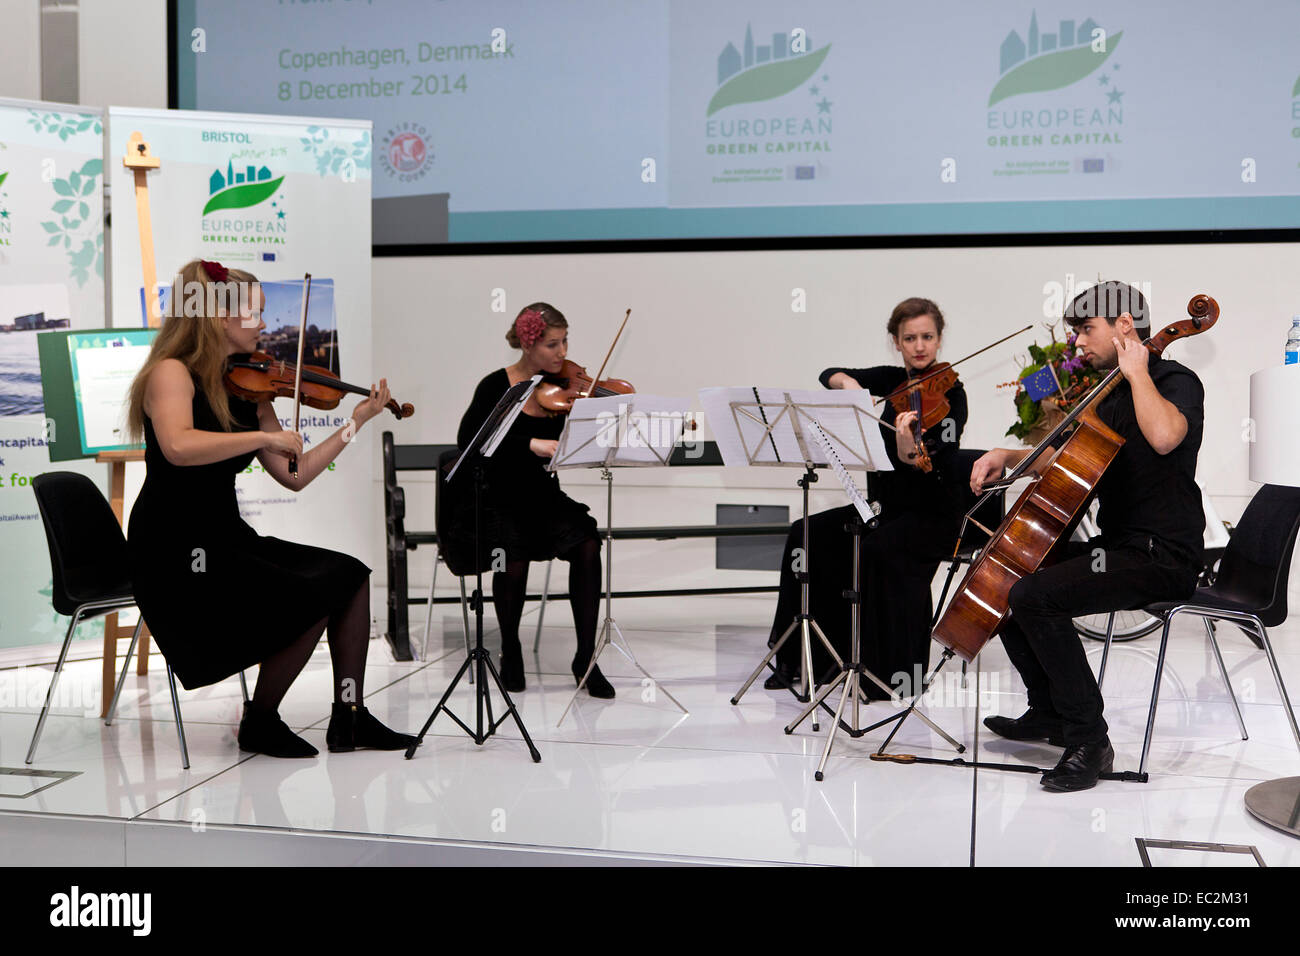 Copenhague, Danemark. 8 Décembre, 2014. Jouer l'orchestre de chambre au cours de la Capitale verte européenne 2014 Cérémonie de transfert de crédit à Copenhague : OJPHOTOS/Alamy Live News Banque D'Images